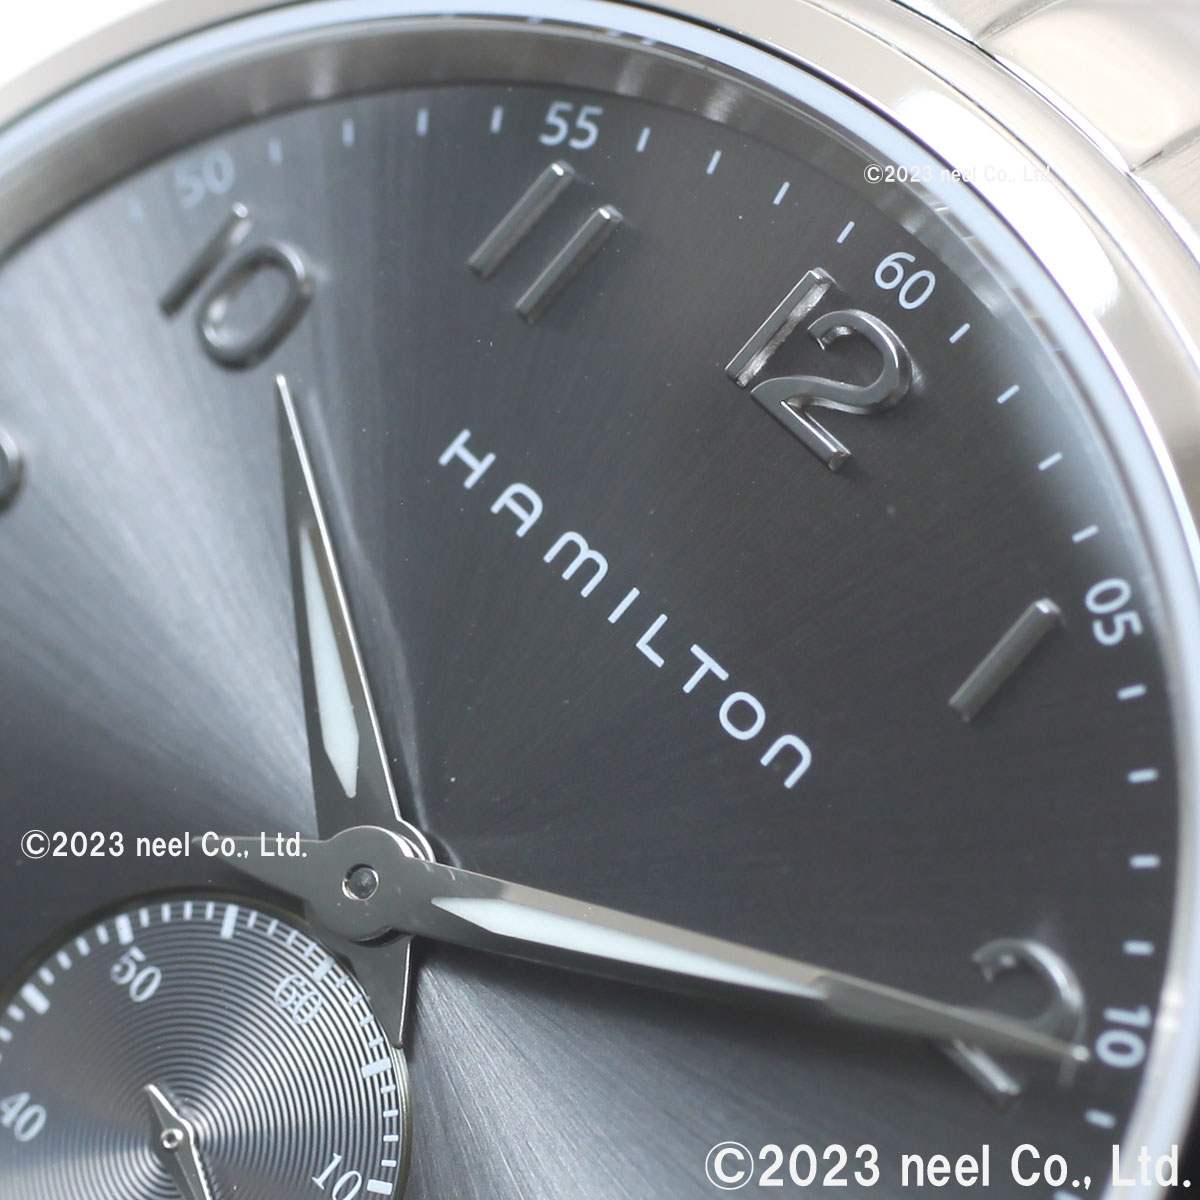 ハミルトン HAMILTON ジャズマスター シンライン スモールセコンド クォーツ H38411183 腕時計 メンズ 正規品